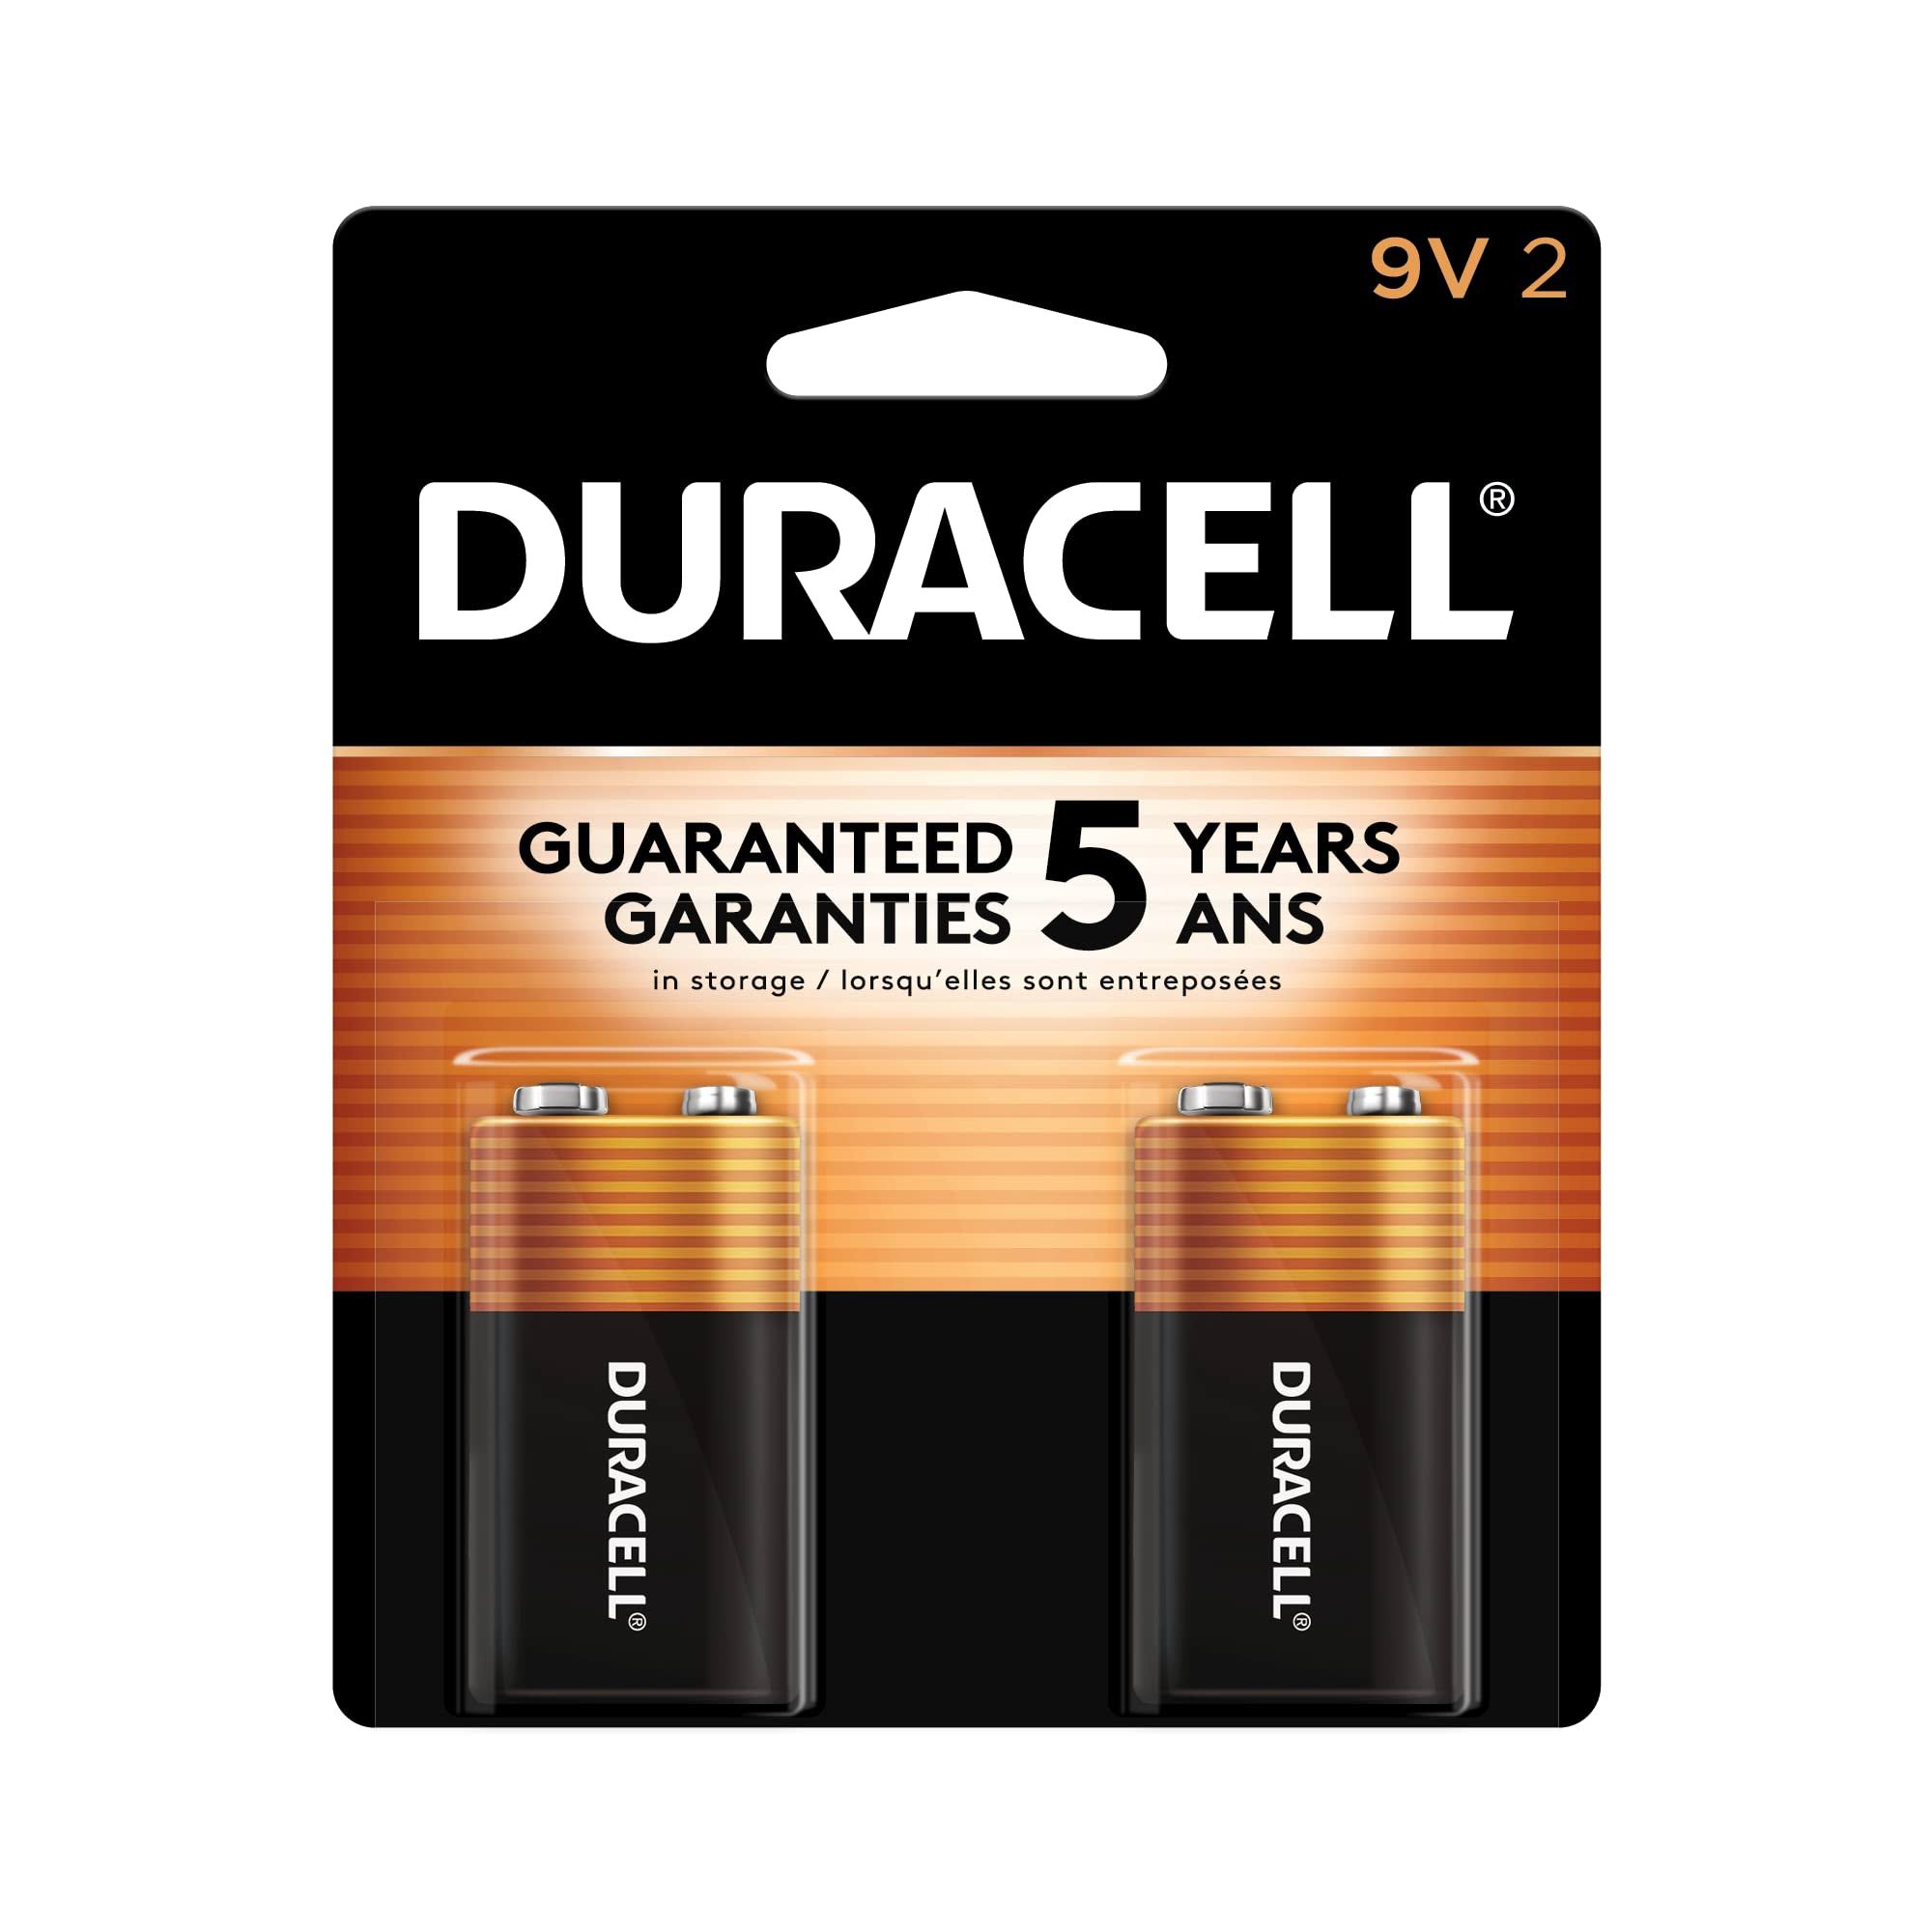 Duracell 9V Alkaline Batteries - 2 pack